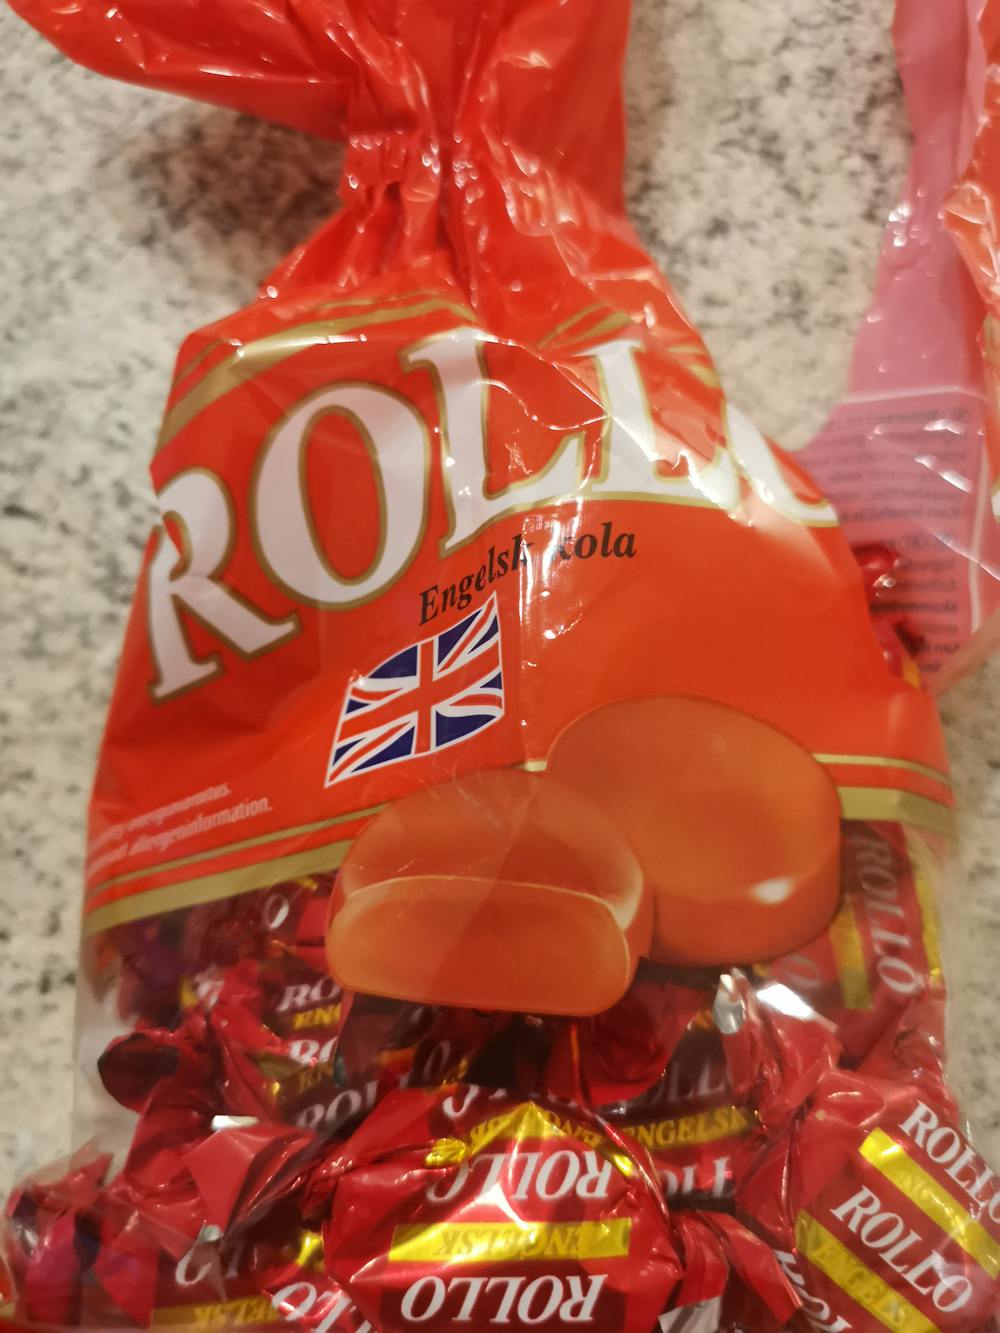 Engelsk cola, Rollo